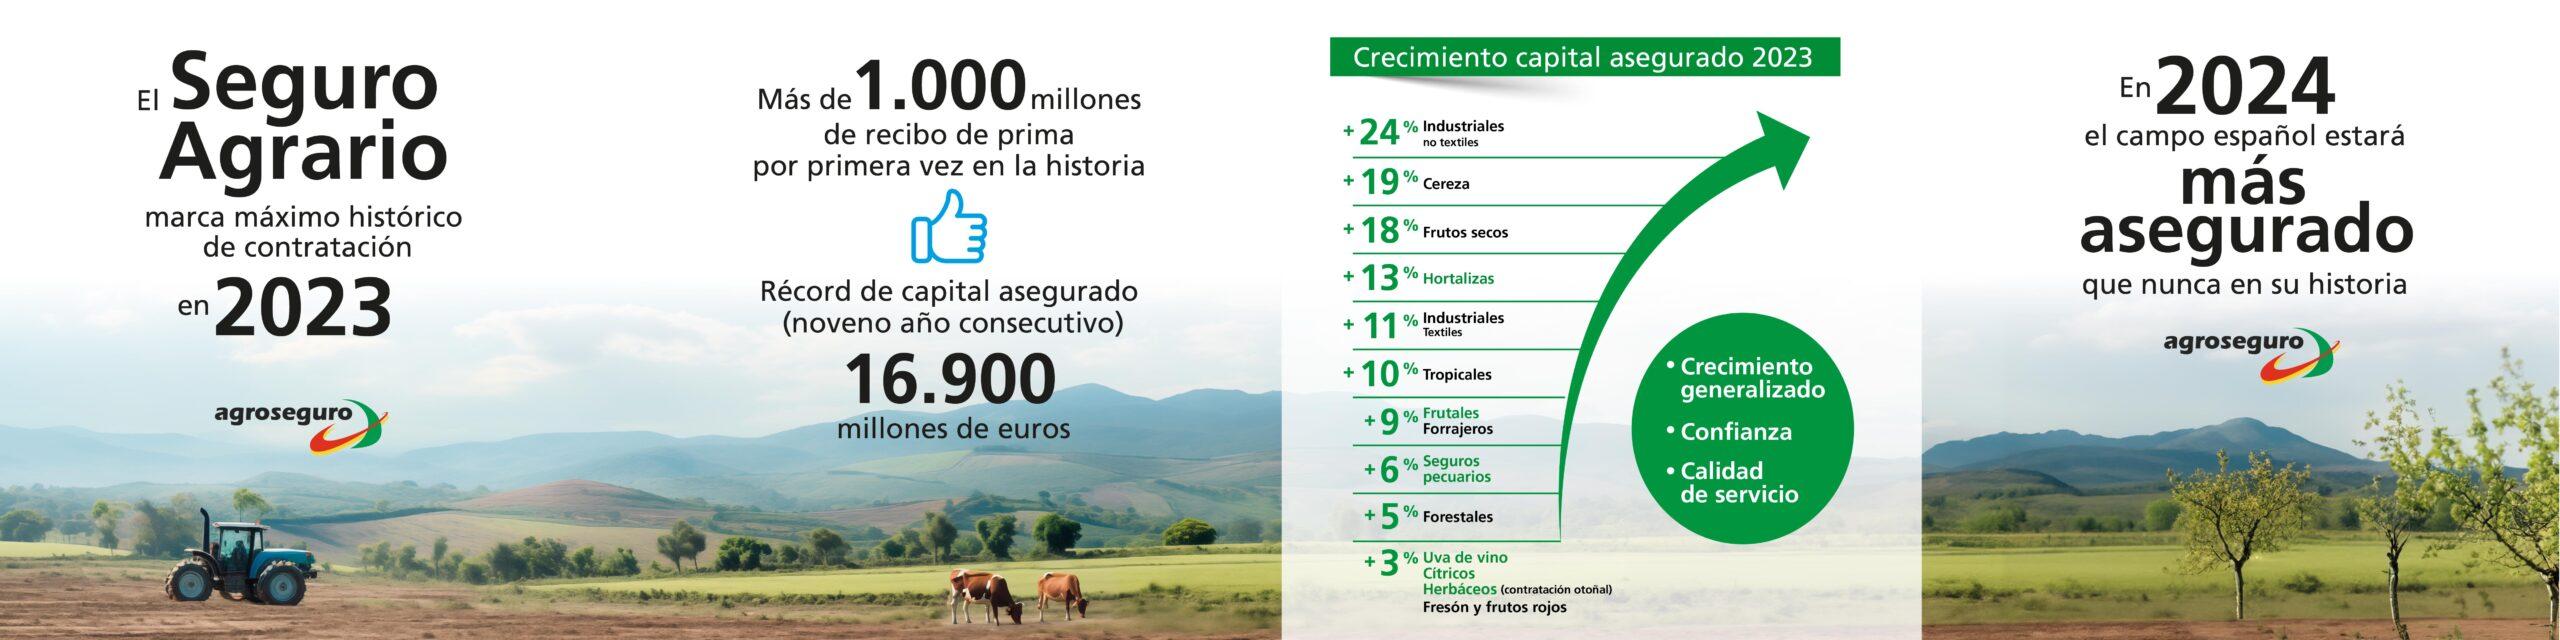 <img src="infografia-agroseguro-2023.jpg" alt="Infografía de Agroseguro mostrando estadísticas y tendencias en la contratación de seguros agrarios en 2023" title="Contratación de Seguros Agrarios en 2023 por Agroseguro" /> 